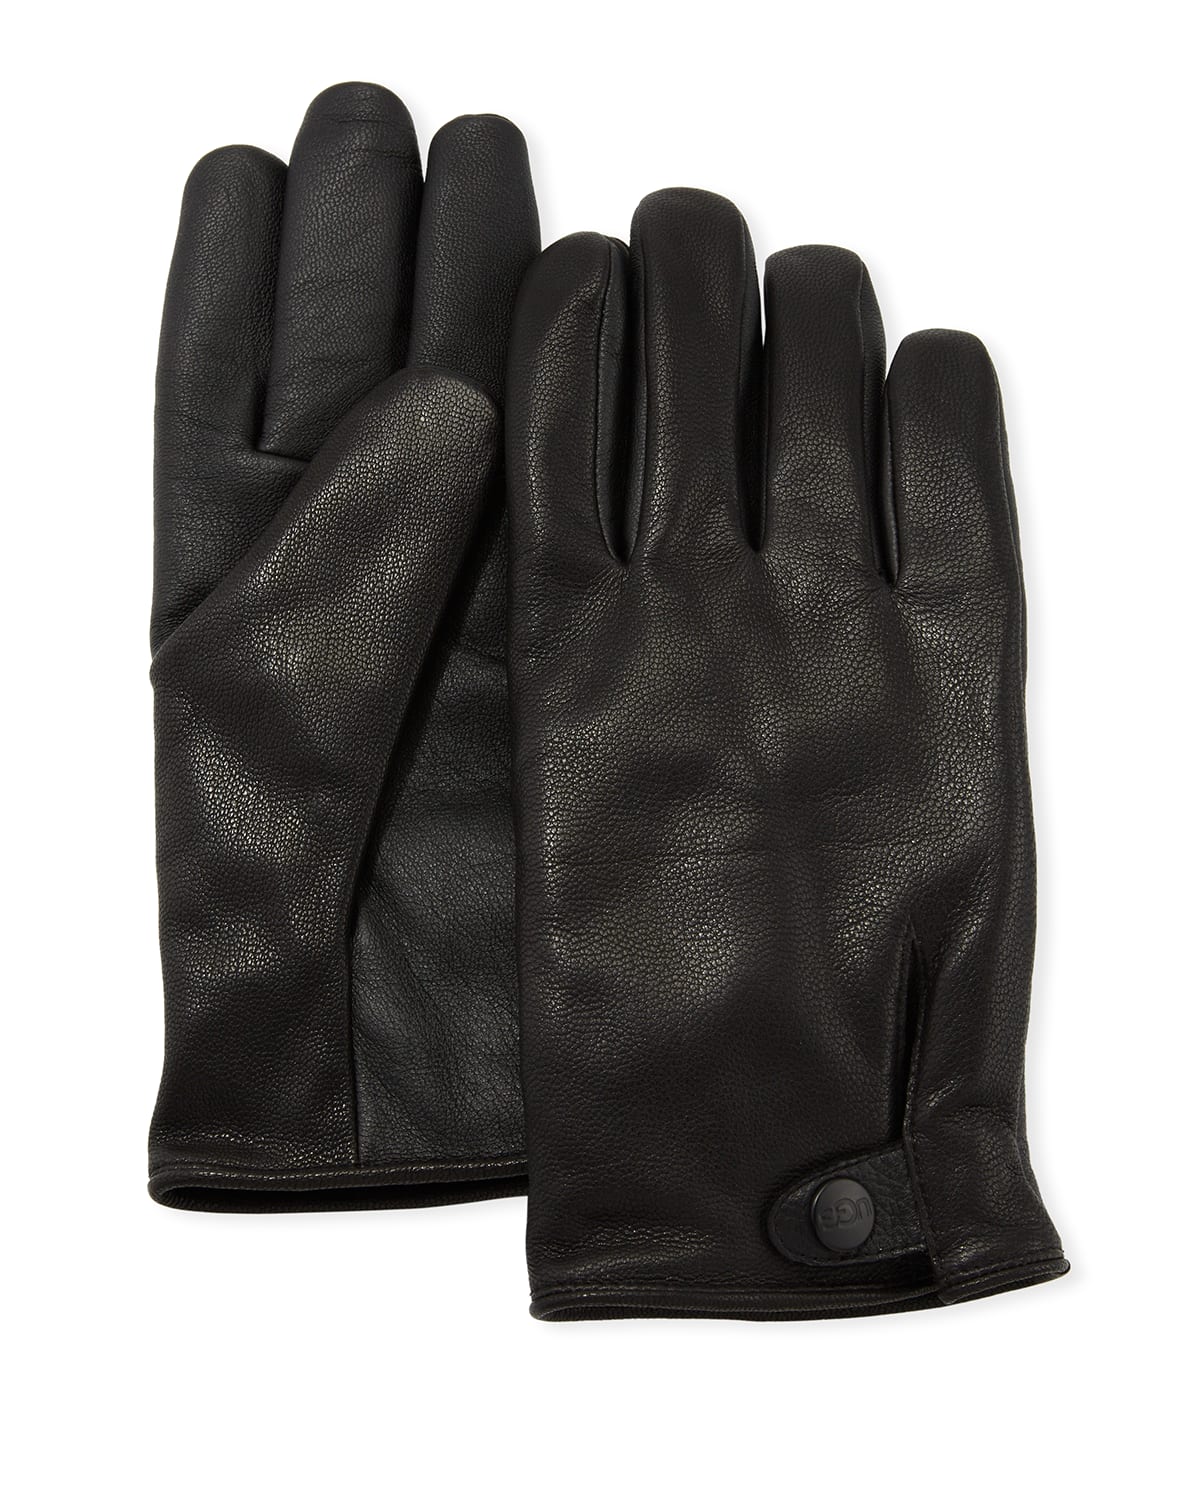 Men's Tabbed-Splice Vent Leather Gloves